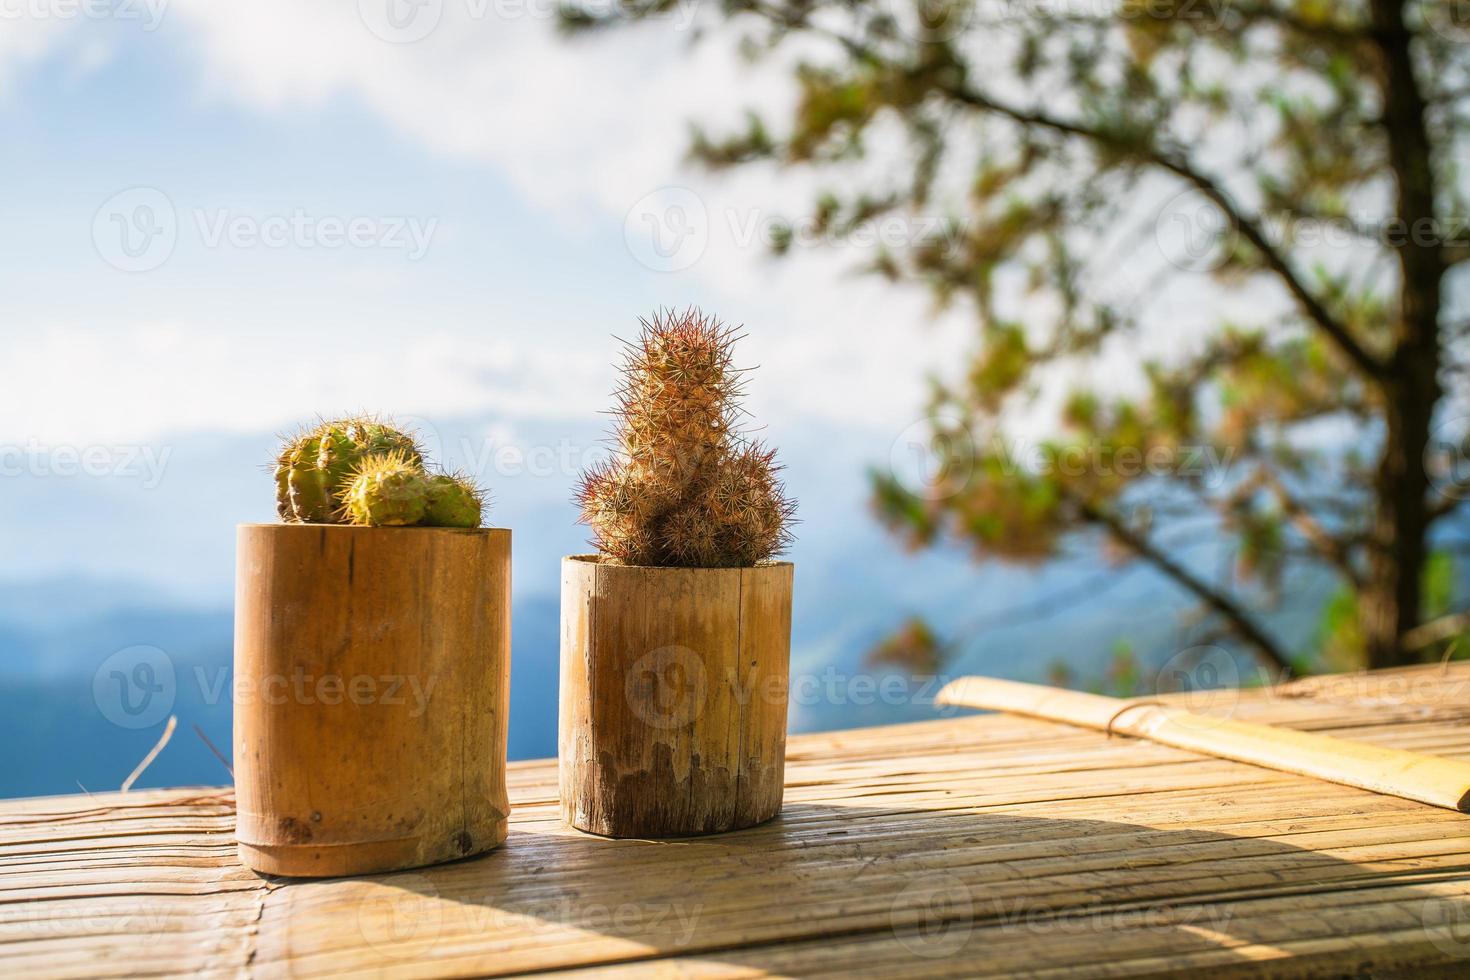 kleiner Kaktus auf der Terrasse, Dekorationspflanze im Bambustopf foto